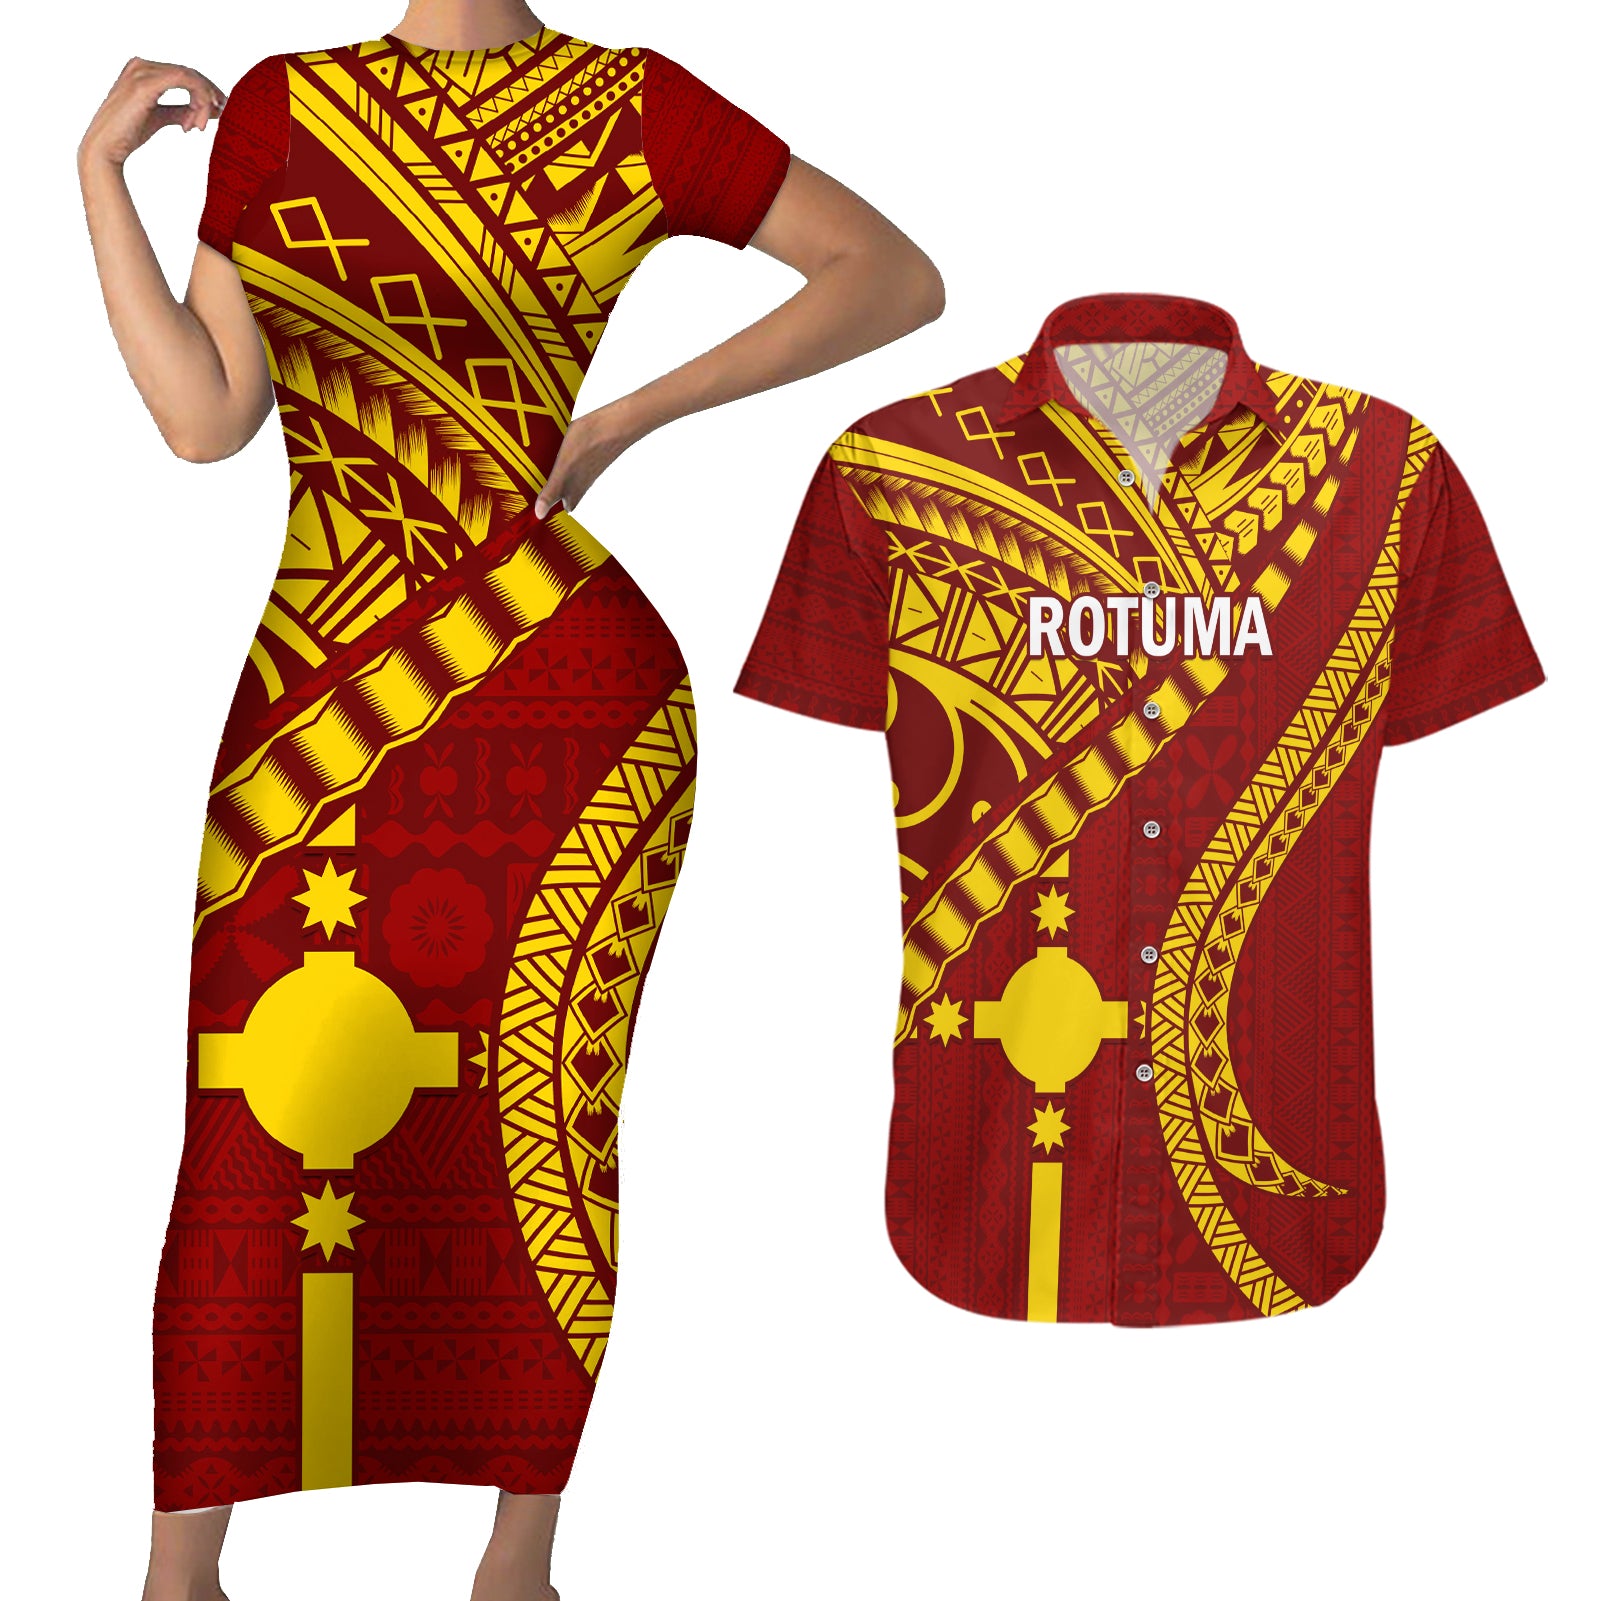 Personalised Fiji Rotuma Couples Matching Short Sleeve Bodycon Dress and Hawaiian Shirt Fijian Tapa Pattern LT14 Maroon - Polynesian Pride